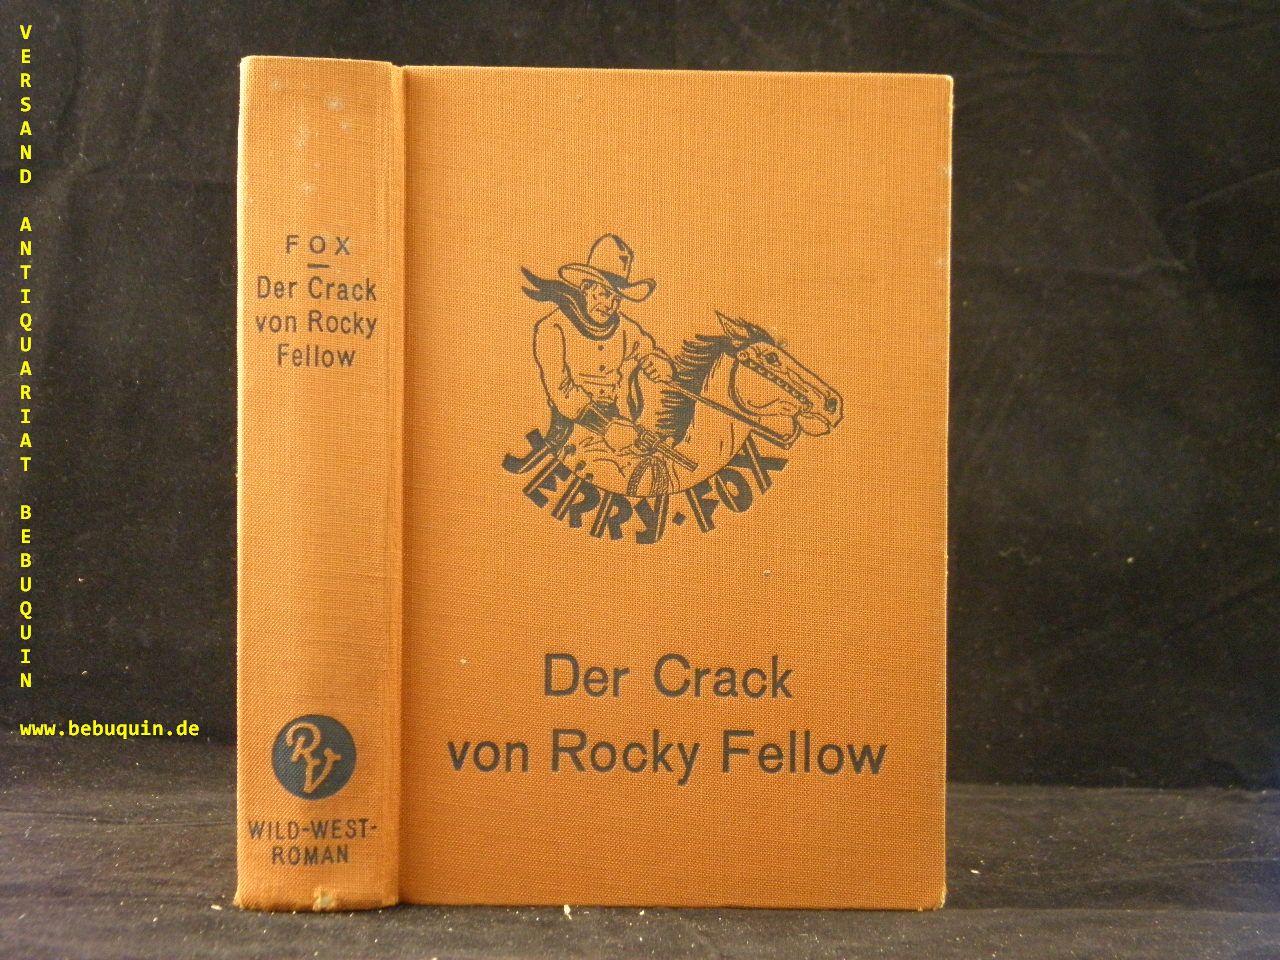 ANDERSEN, Wolf: - Jerry Fox. Der Crack von Rocky Fellow. Wild-West-Roman.